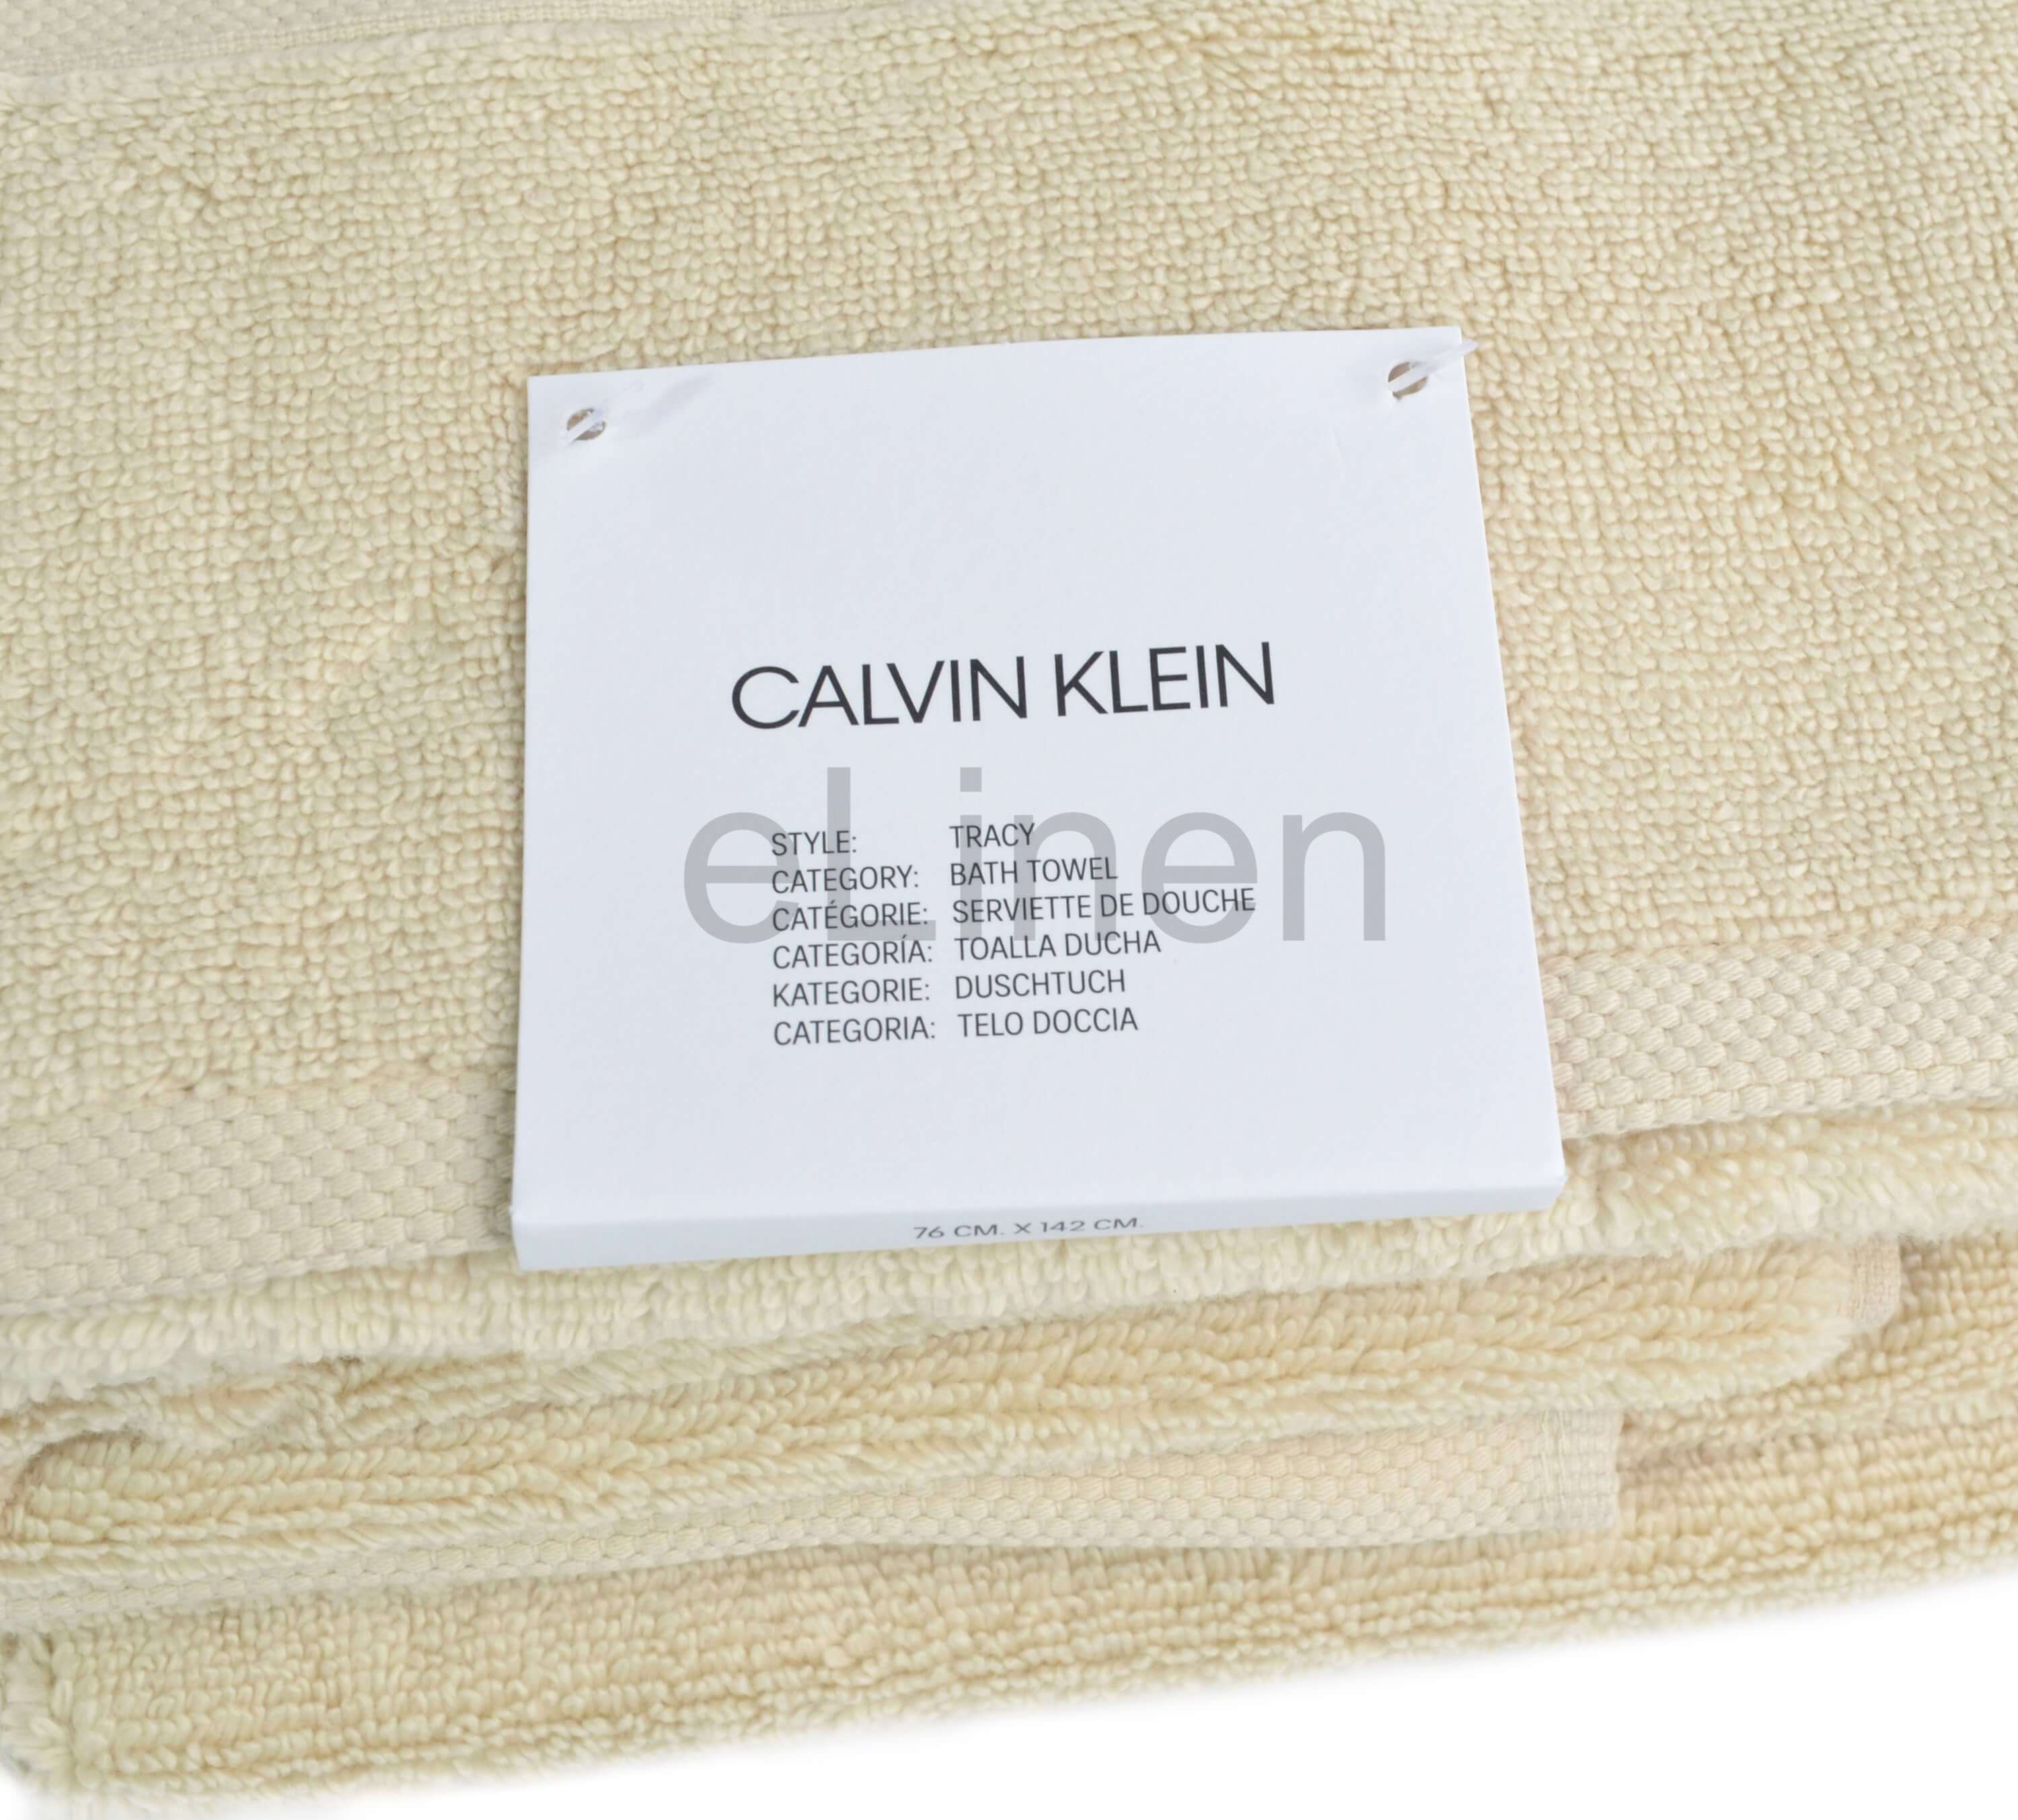 Полотенце Calvin Klein Tracy Beige ☞ Размер: 76 x 142 см